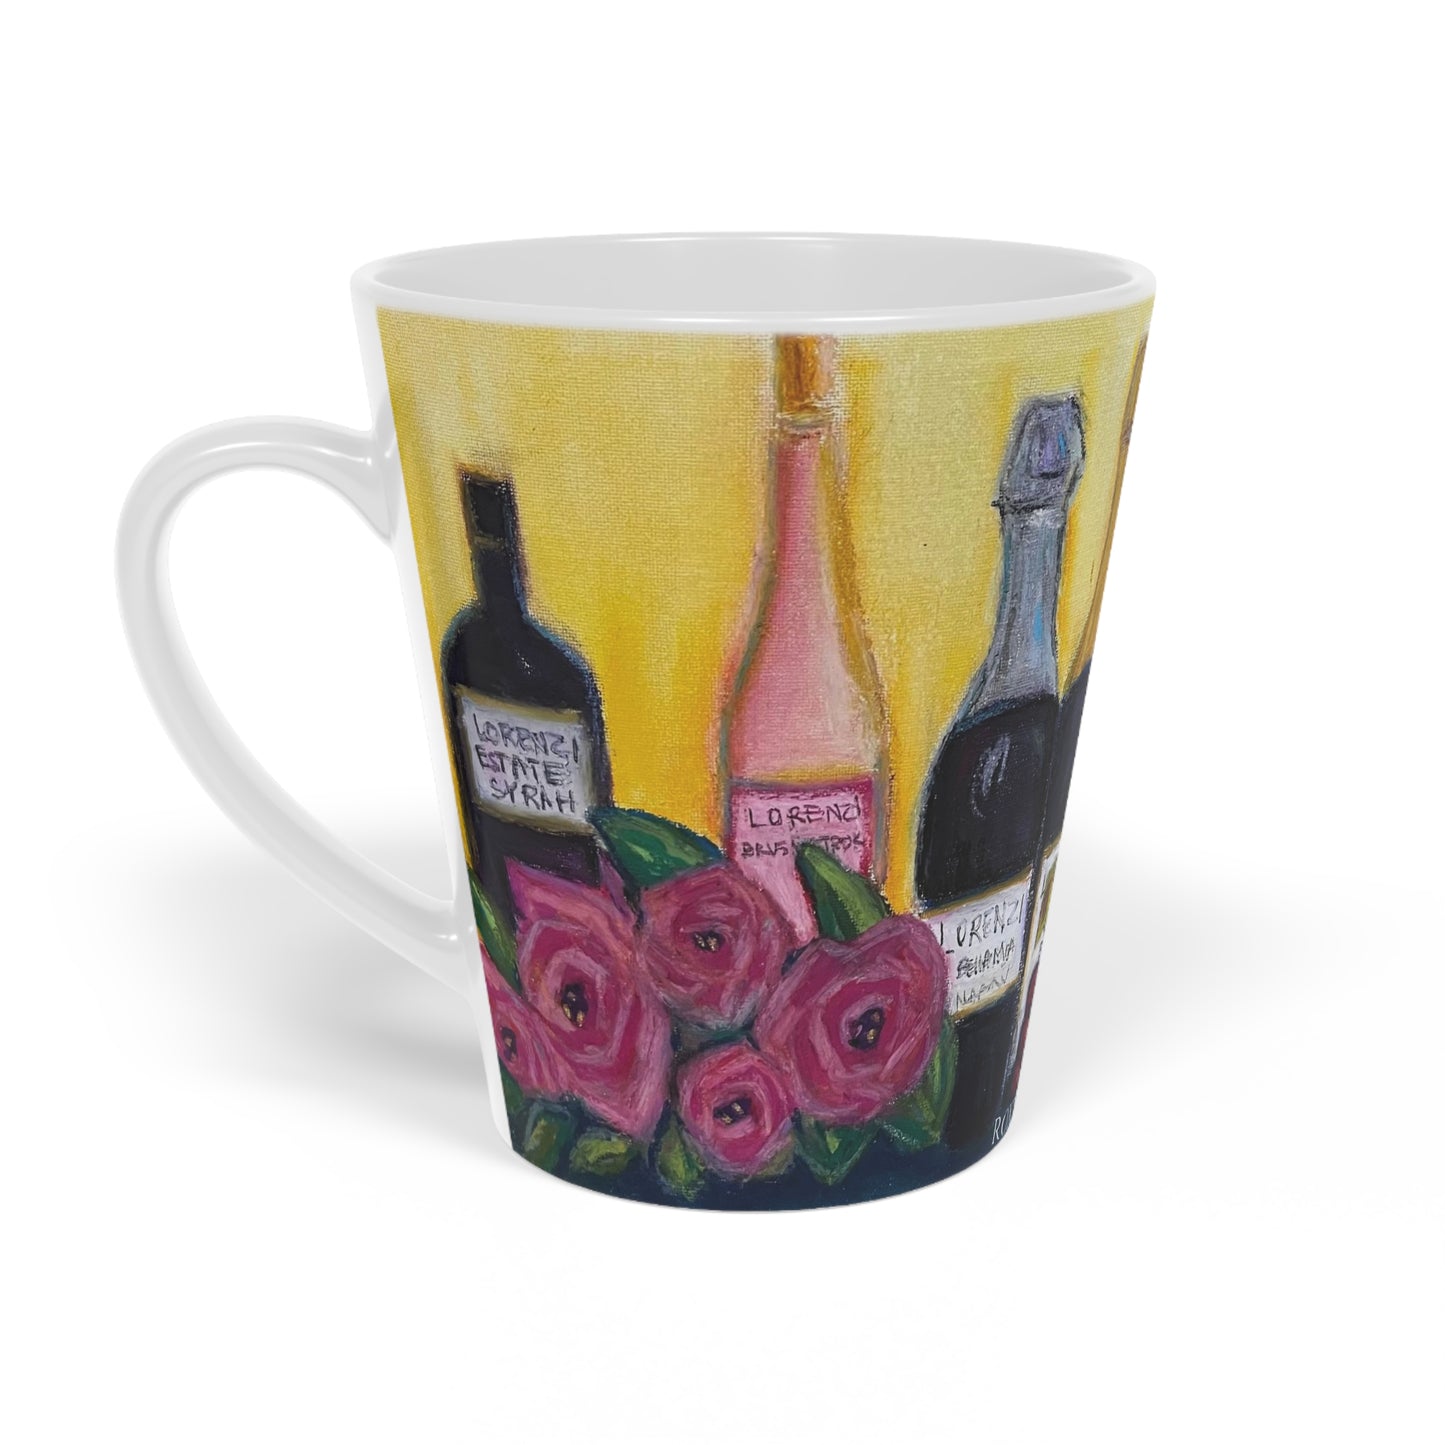 Lorenzi estate Taza de café con leche de vino y rosas, 12 oz